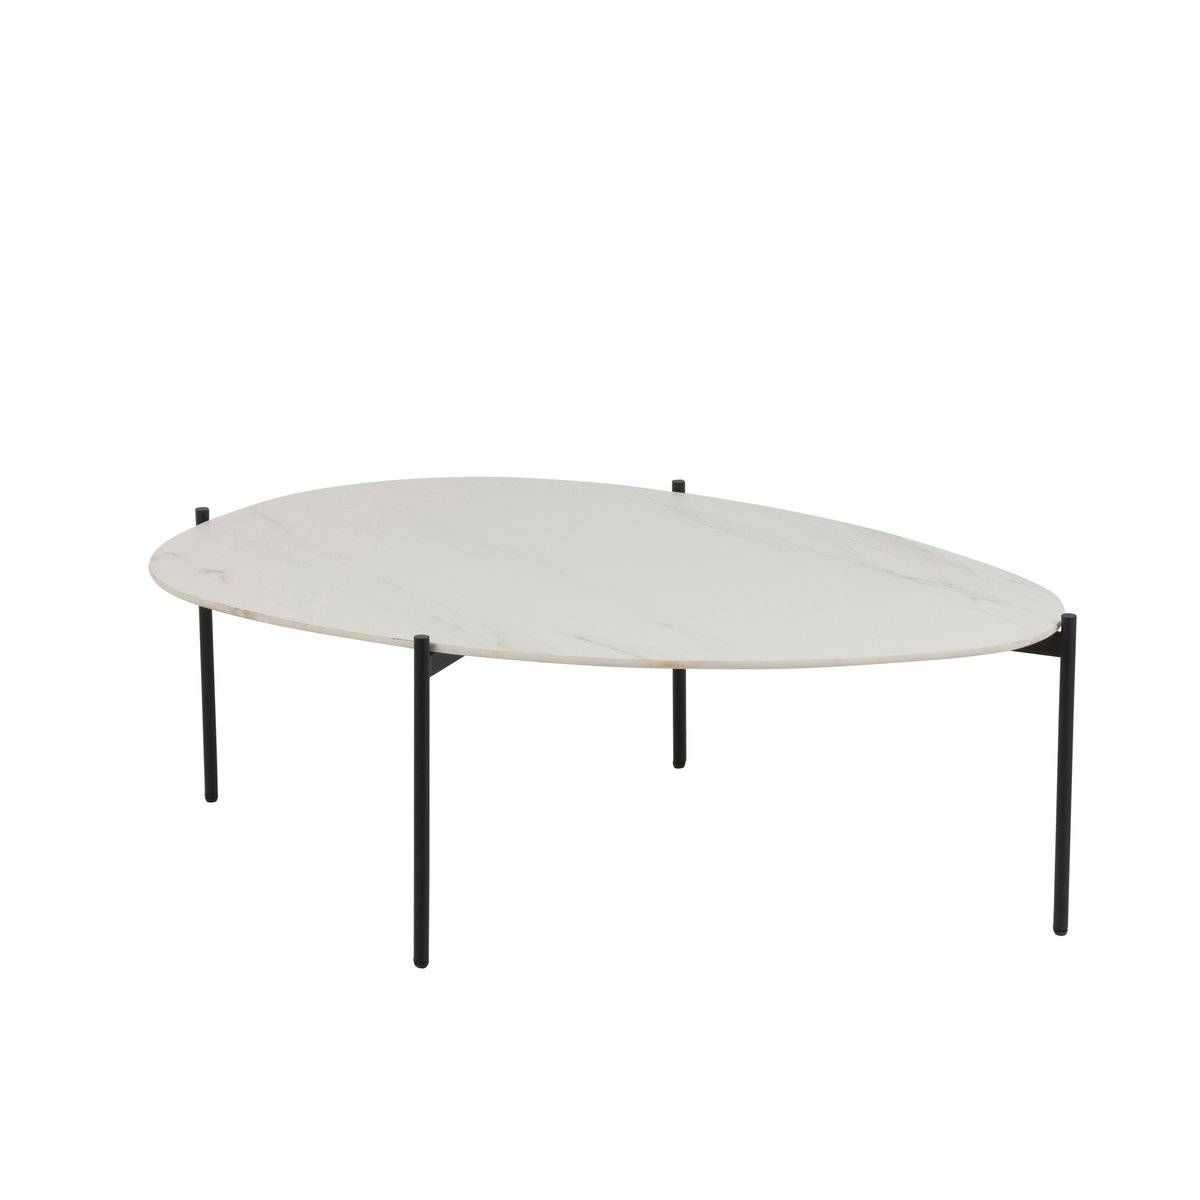 J-Line Side Table Oval Porcelain/Metal White Large